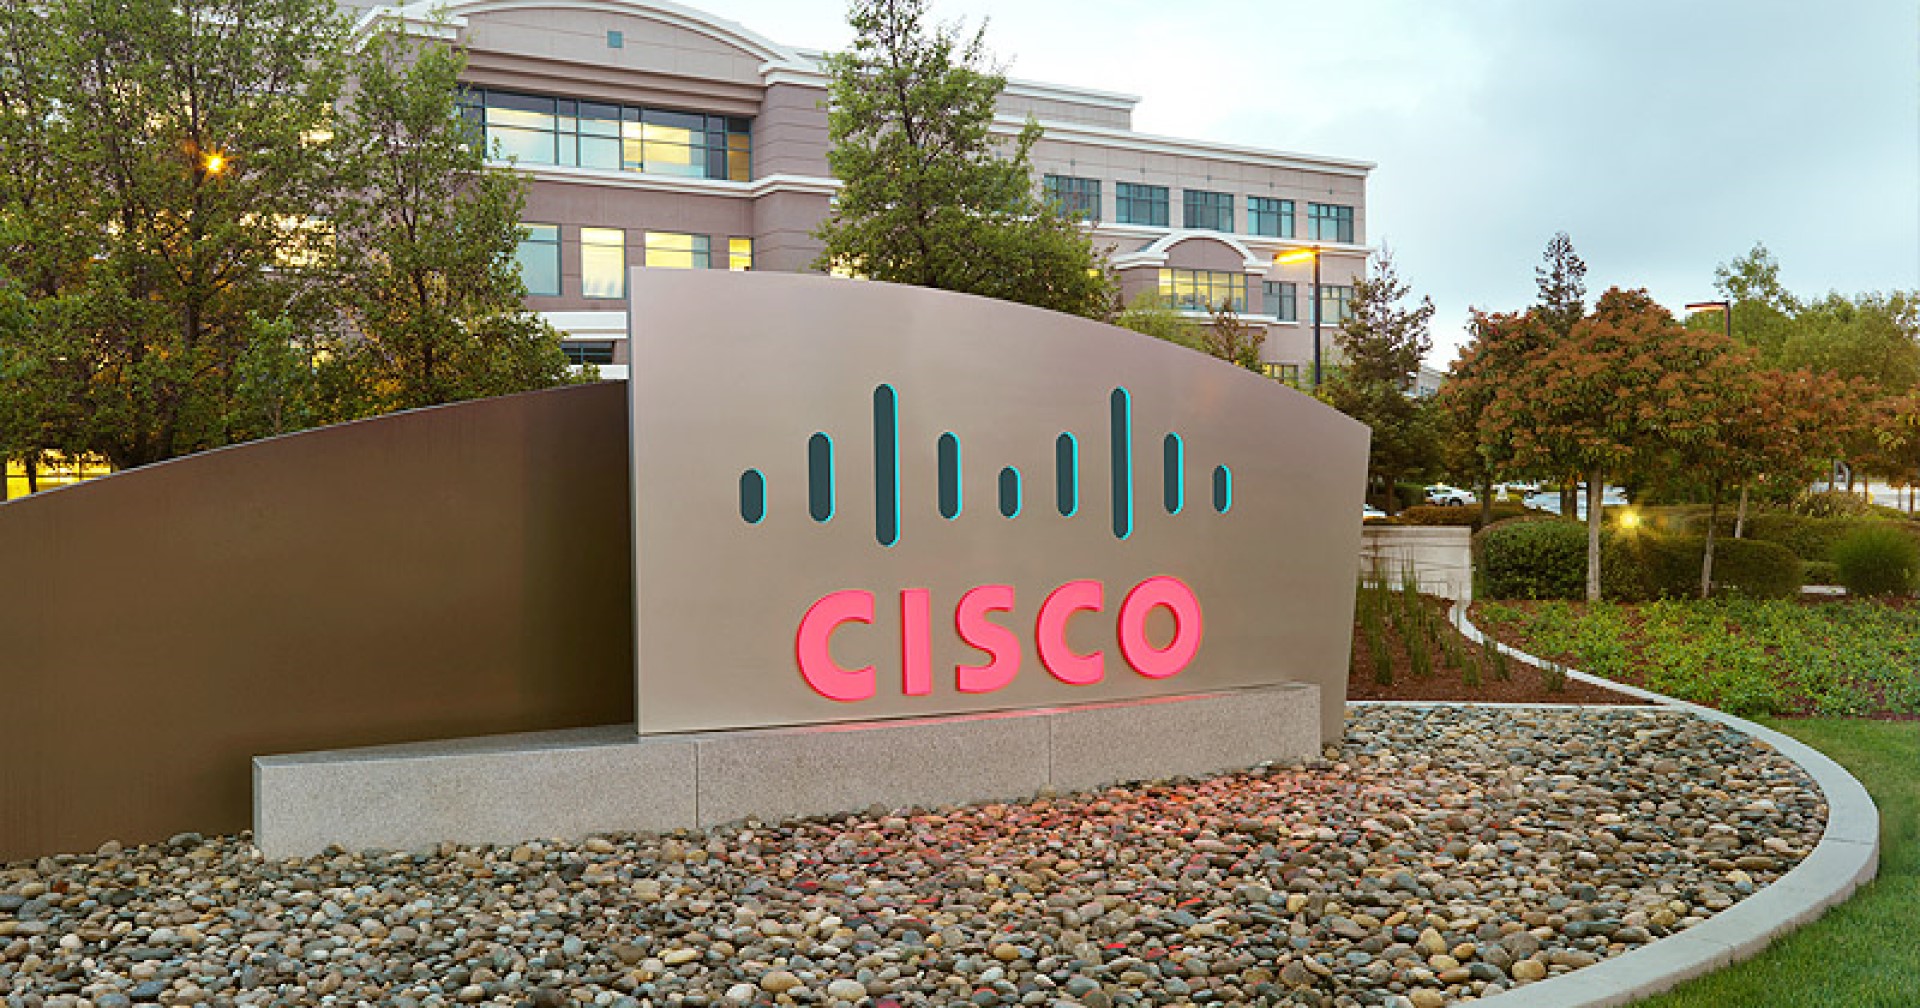 Cisco ชี้ผลิตภัณฑ์ถูกแฮกเกอร์นำไปใช้แฮกโครงข่ายรัฐทั่วโลก